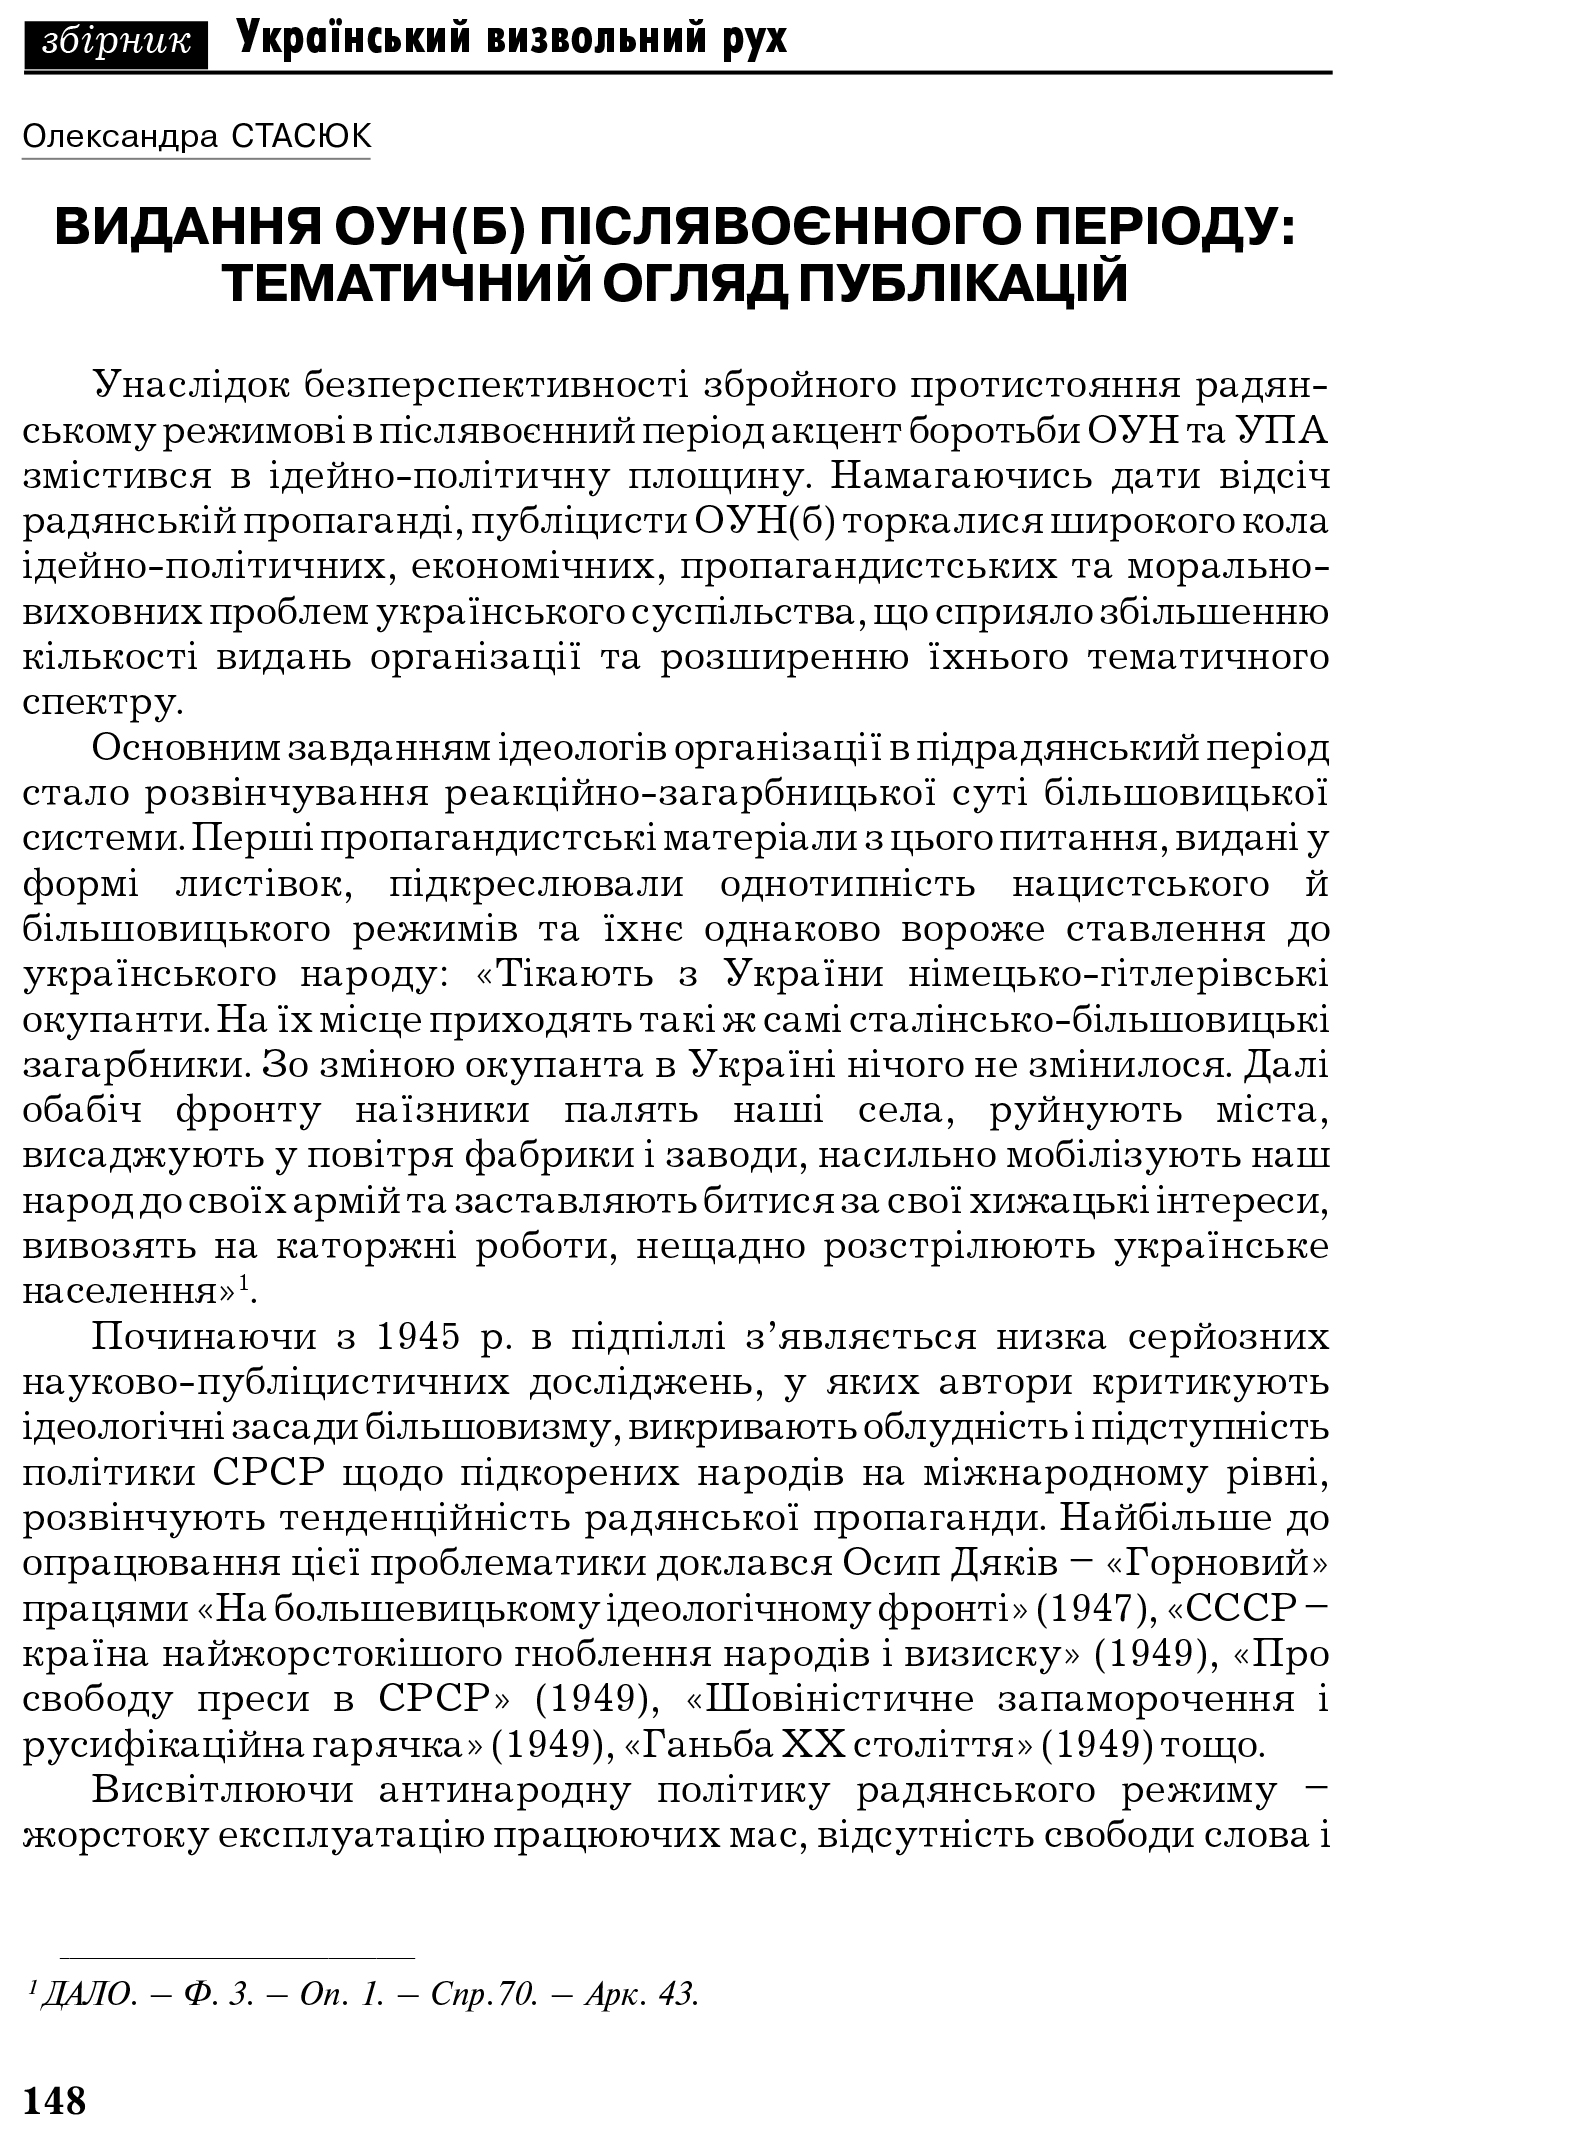 Український визвольний рух №6, ст. 148 - 169